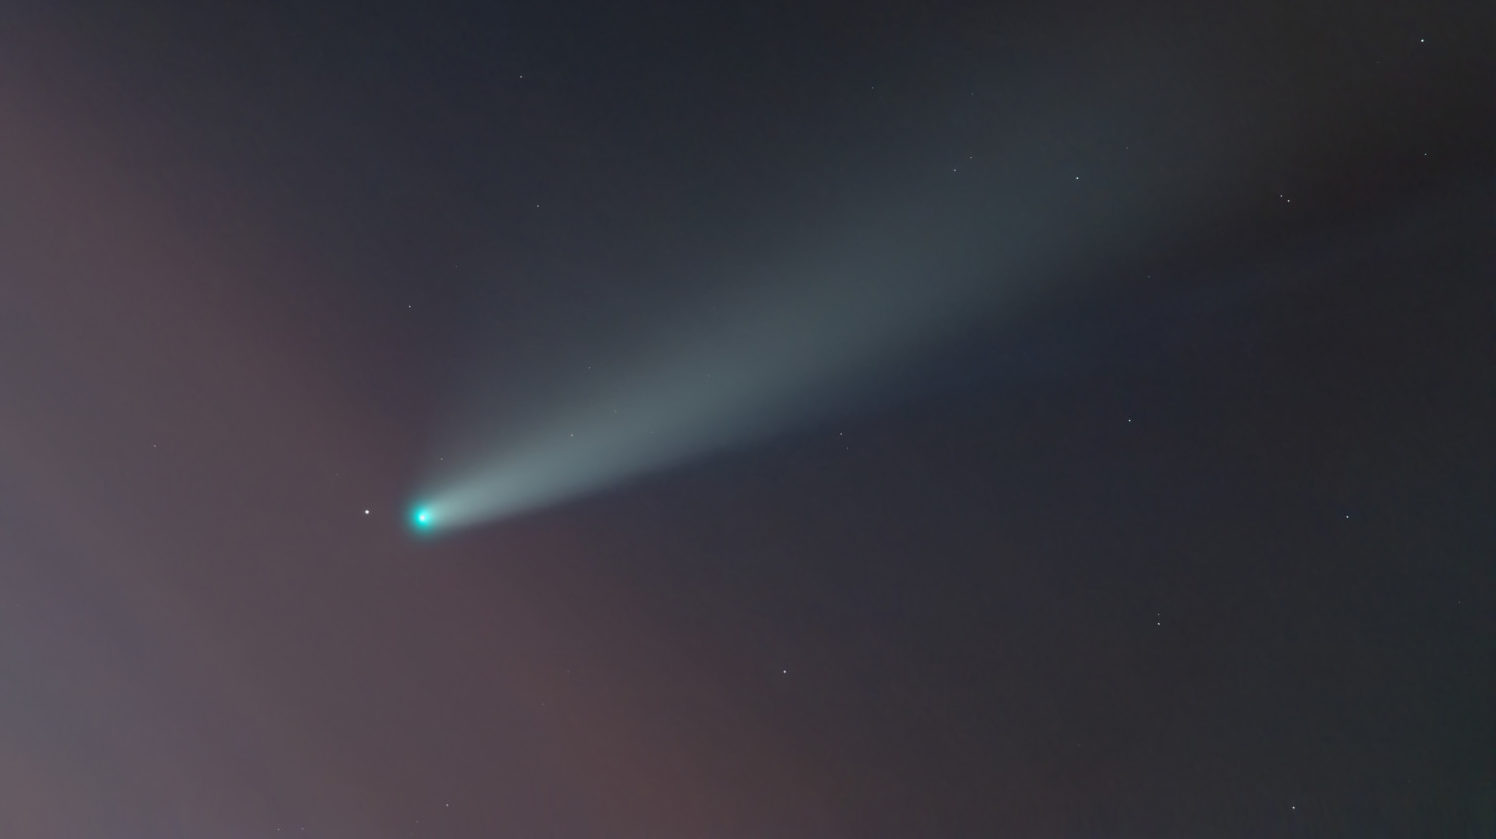 Green comet C in night sky